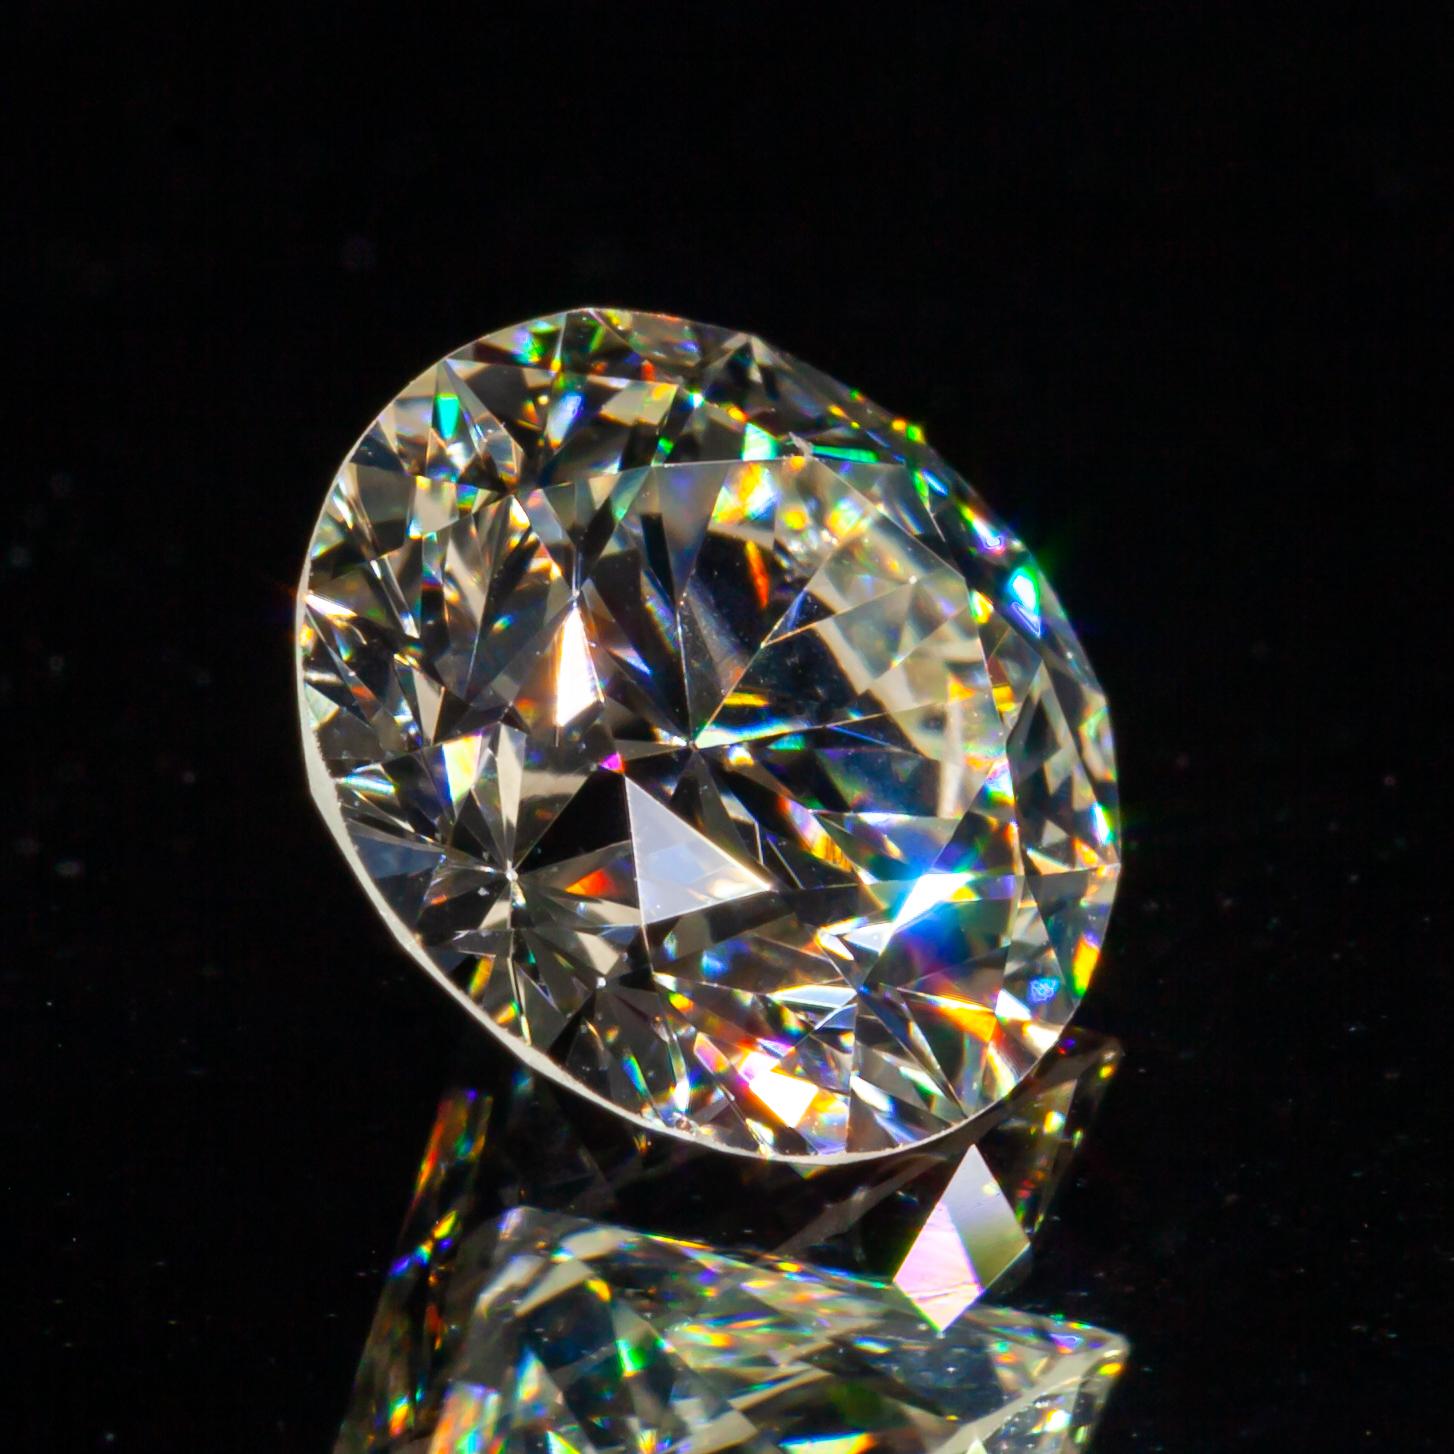 Diamant taille ronde brillant de 1,37 carat non serti K/VS2 certifié GIA

Informations générales sur le diamant
Taille du diamant : Brilliante ronde
Dimensions : 7.17  x  7.11  -  4.49 mm

Résultats de la classification des diamants
Poids en carats